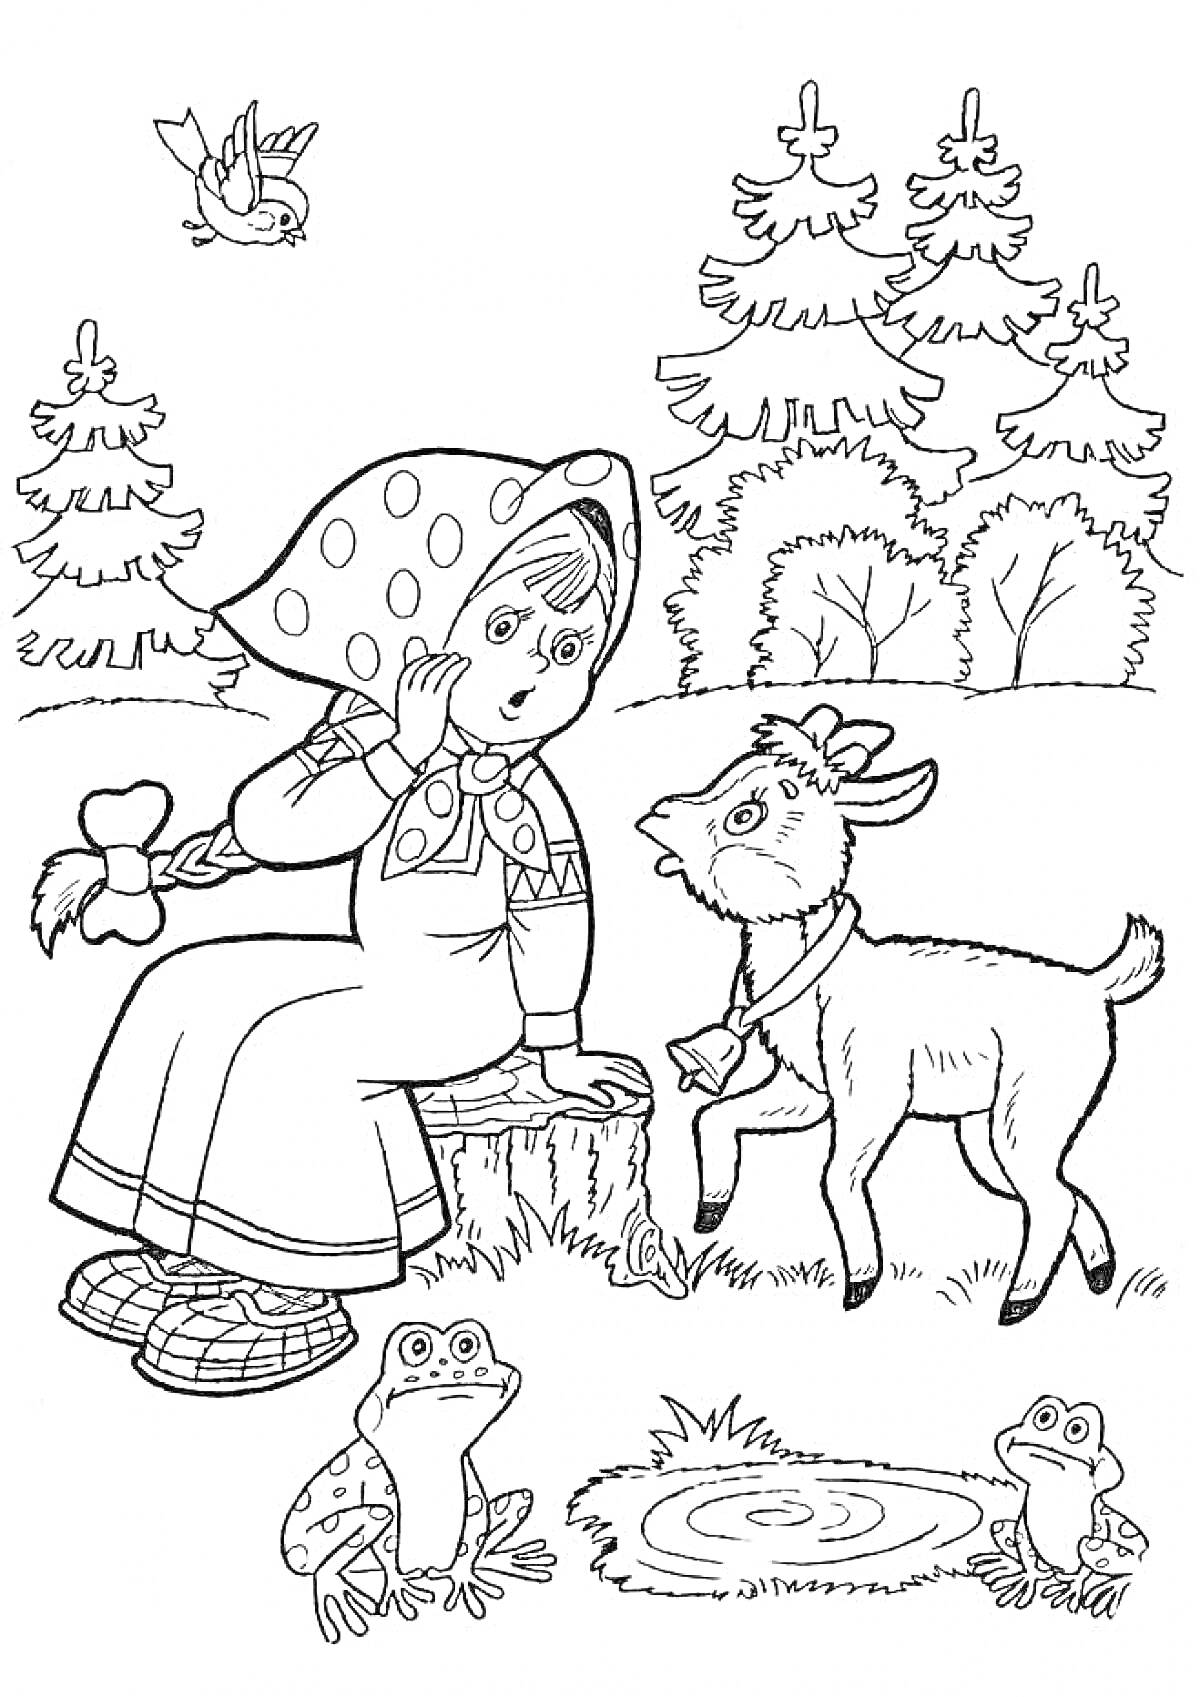 Раскраска Девочка с козленком у лесного пруда, лягушки на берегу, птица на дереве